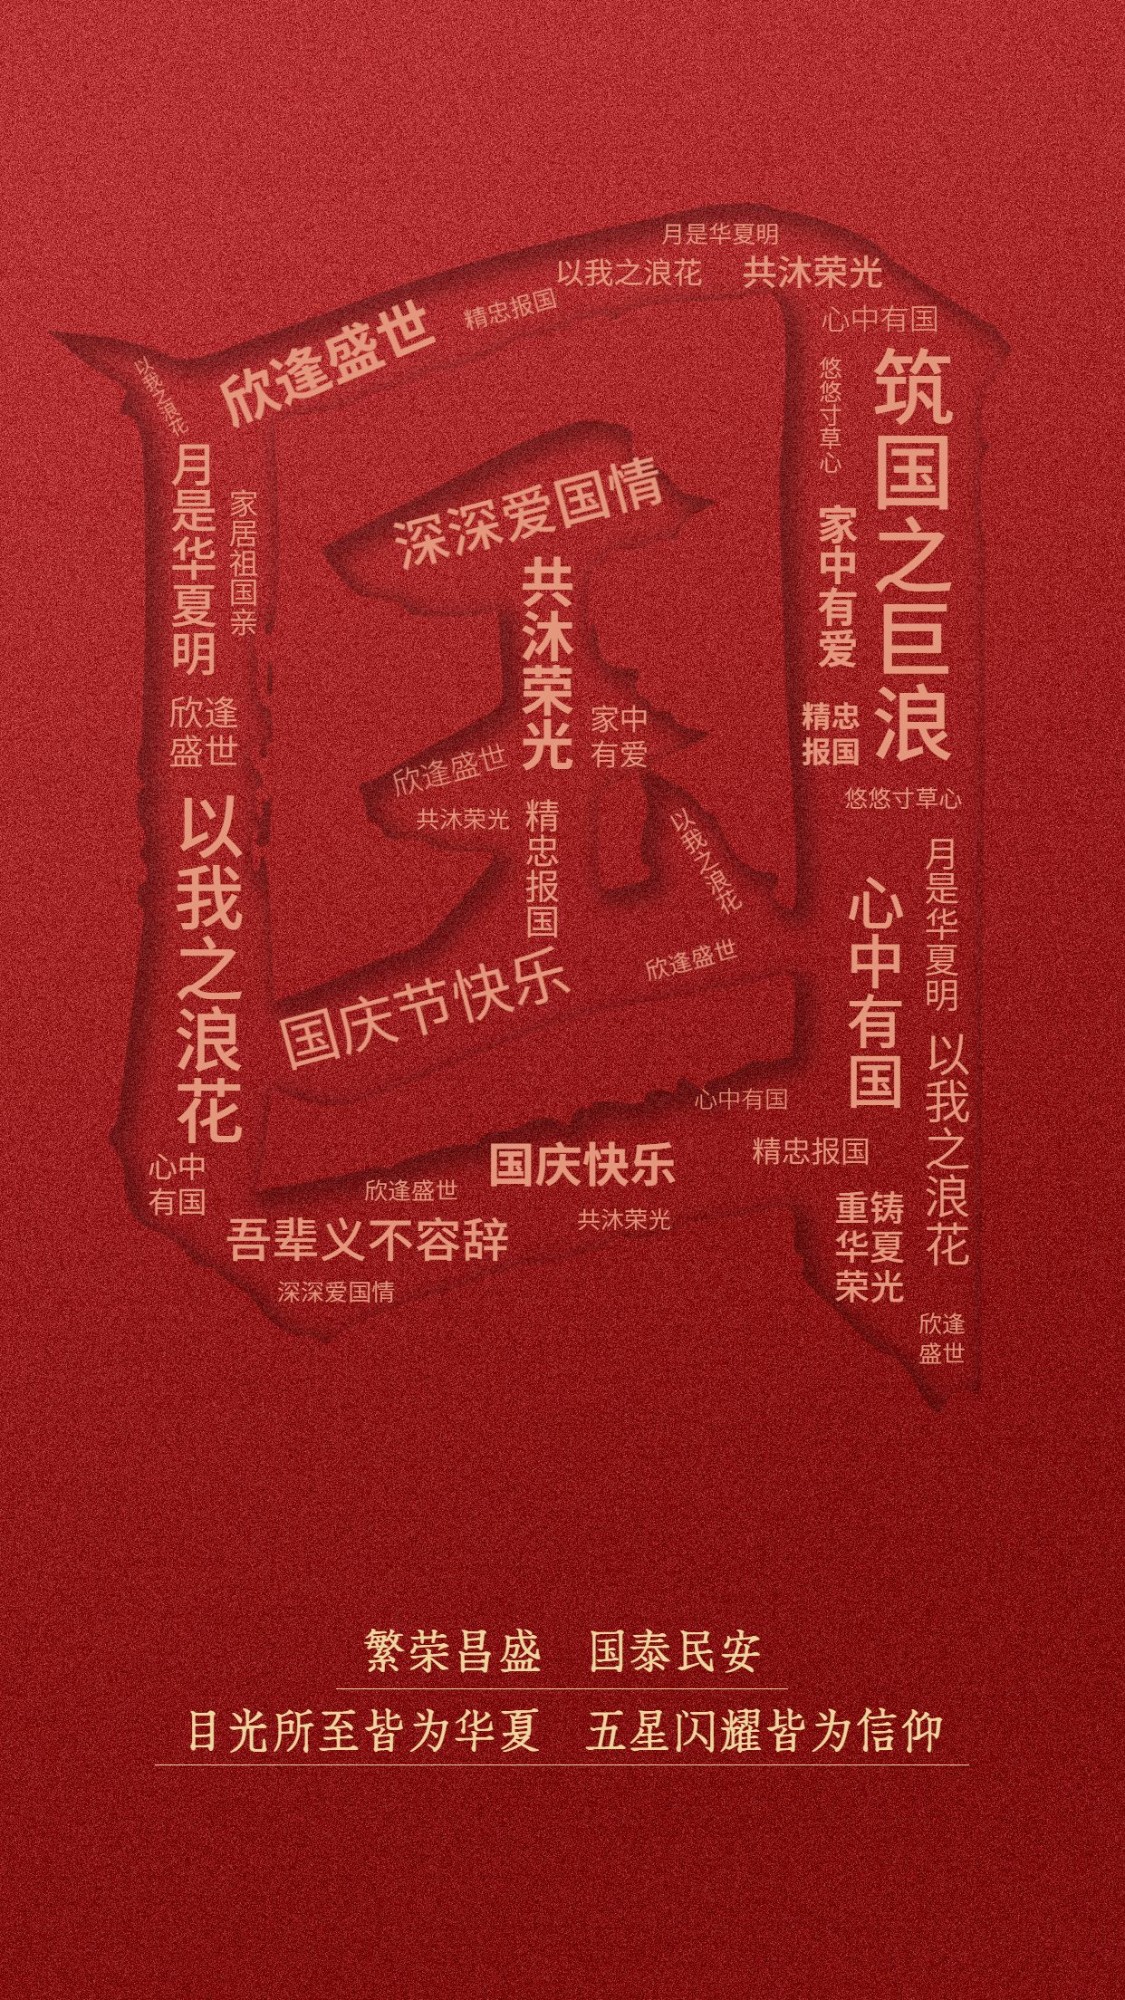 十一国庆节祝福创意合成竖版海报